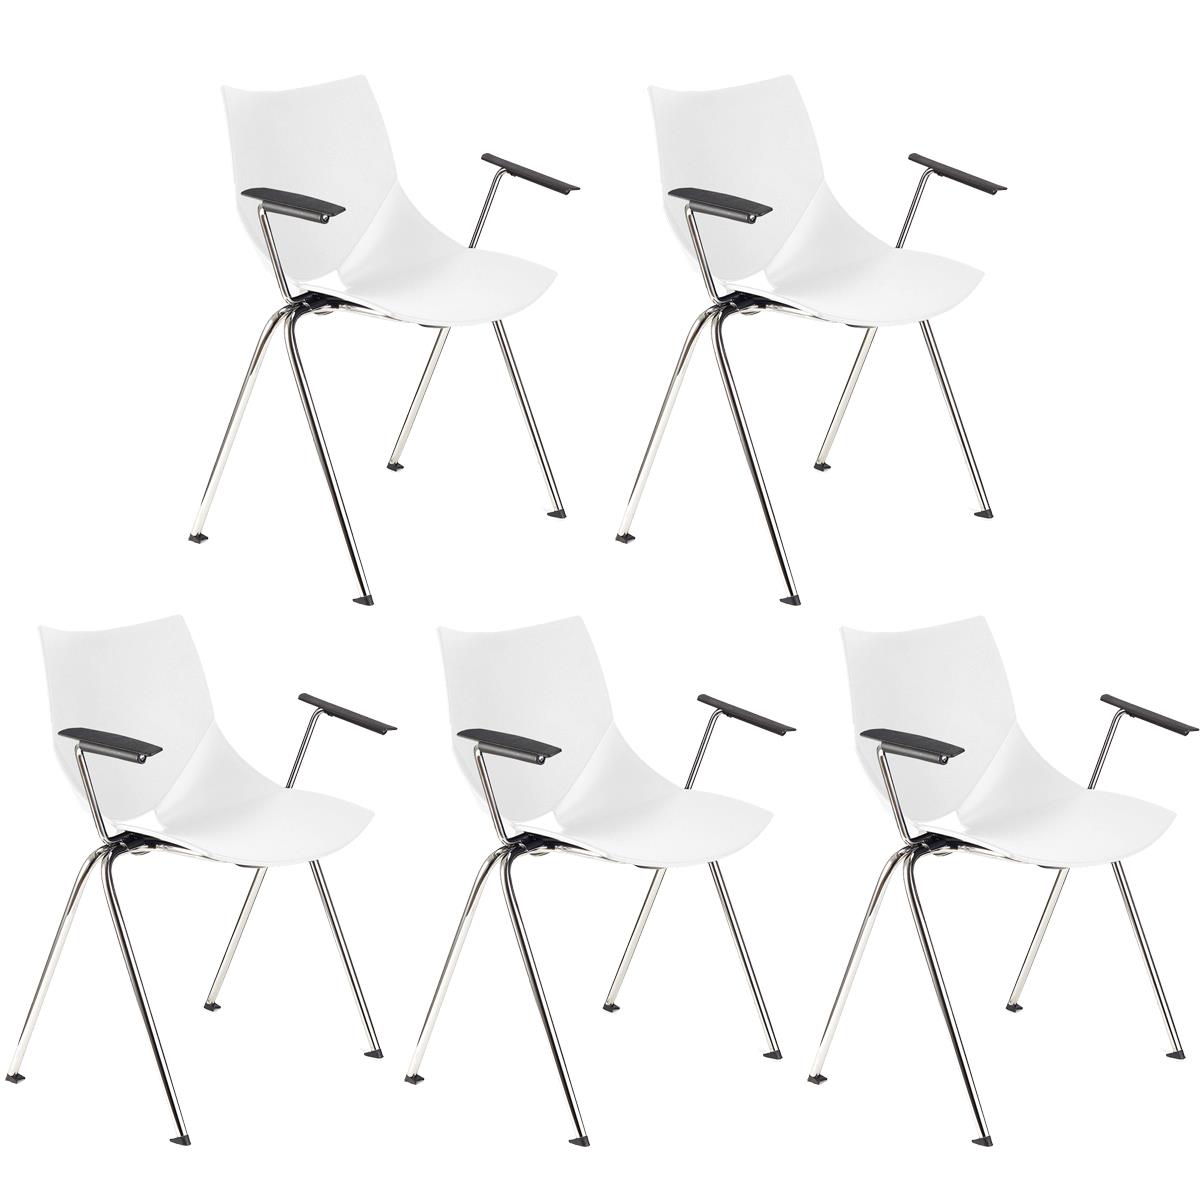 Lote 5 Cadeiras de Visita AMIR COM BRAÇOS, Confortável e Empilhável, Cor Branco